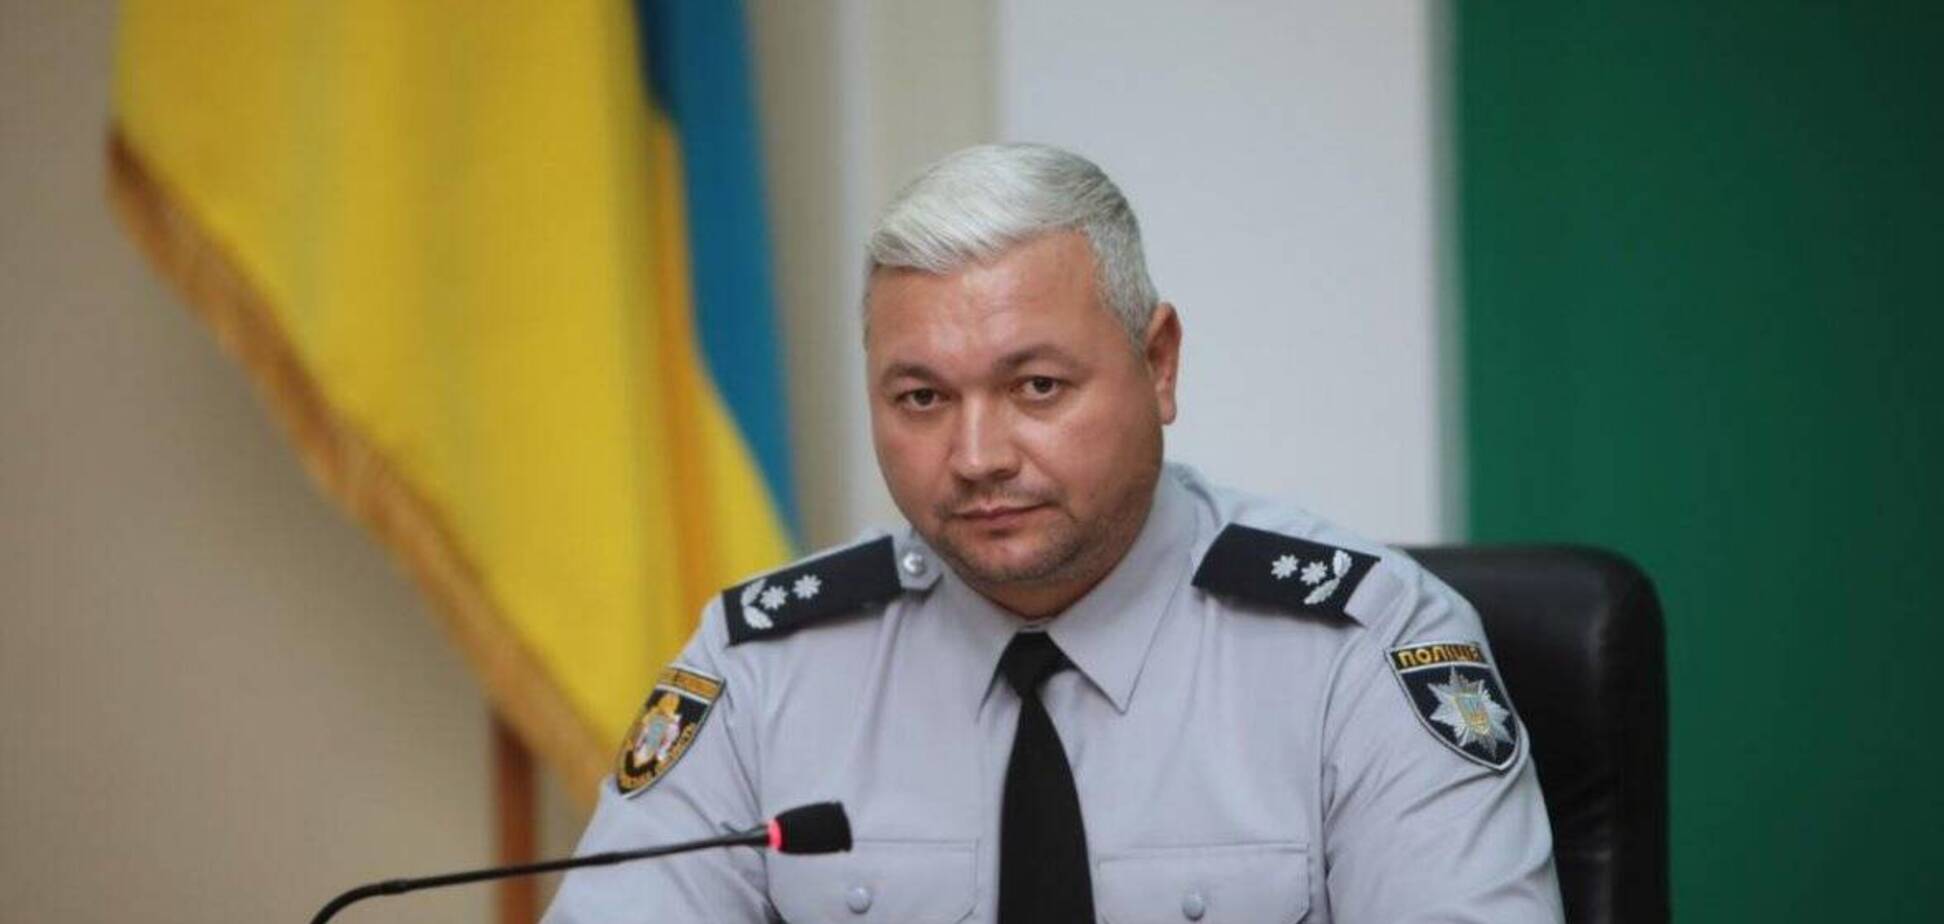 Голову поліції Дніпропетровської області звільнили після скандалу в Павлограді